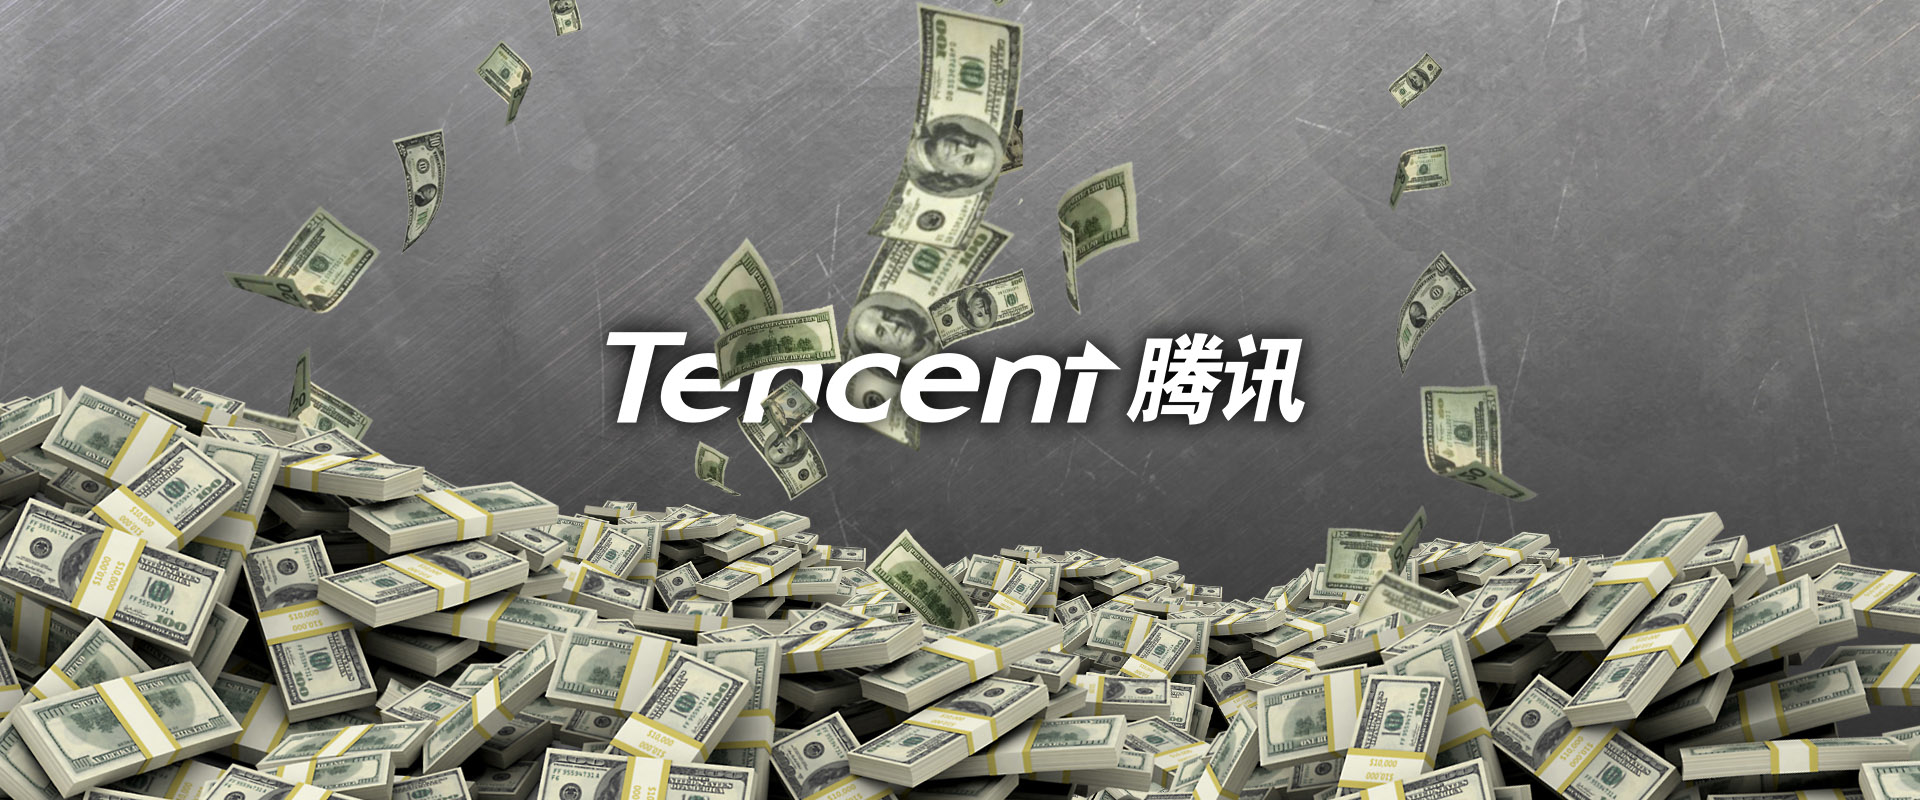 A Tencent 15 milliárd dollárt tol az e-sportba a következő 5 évben